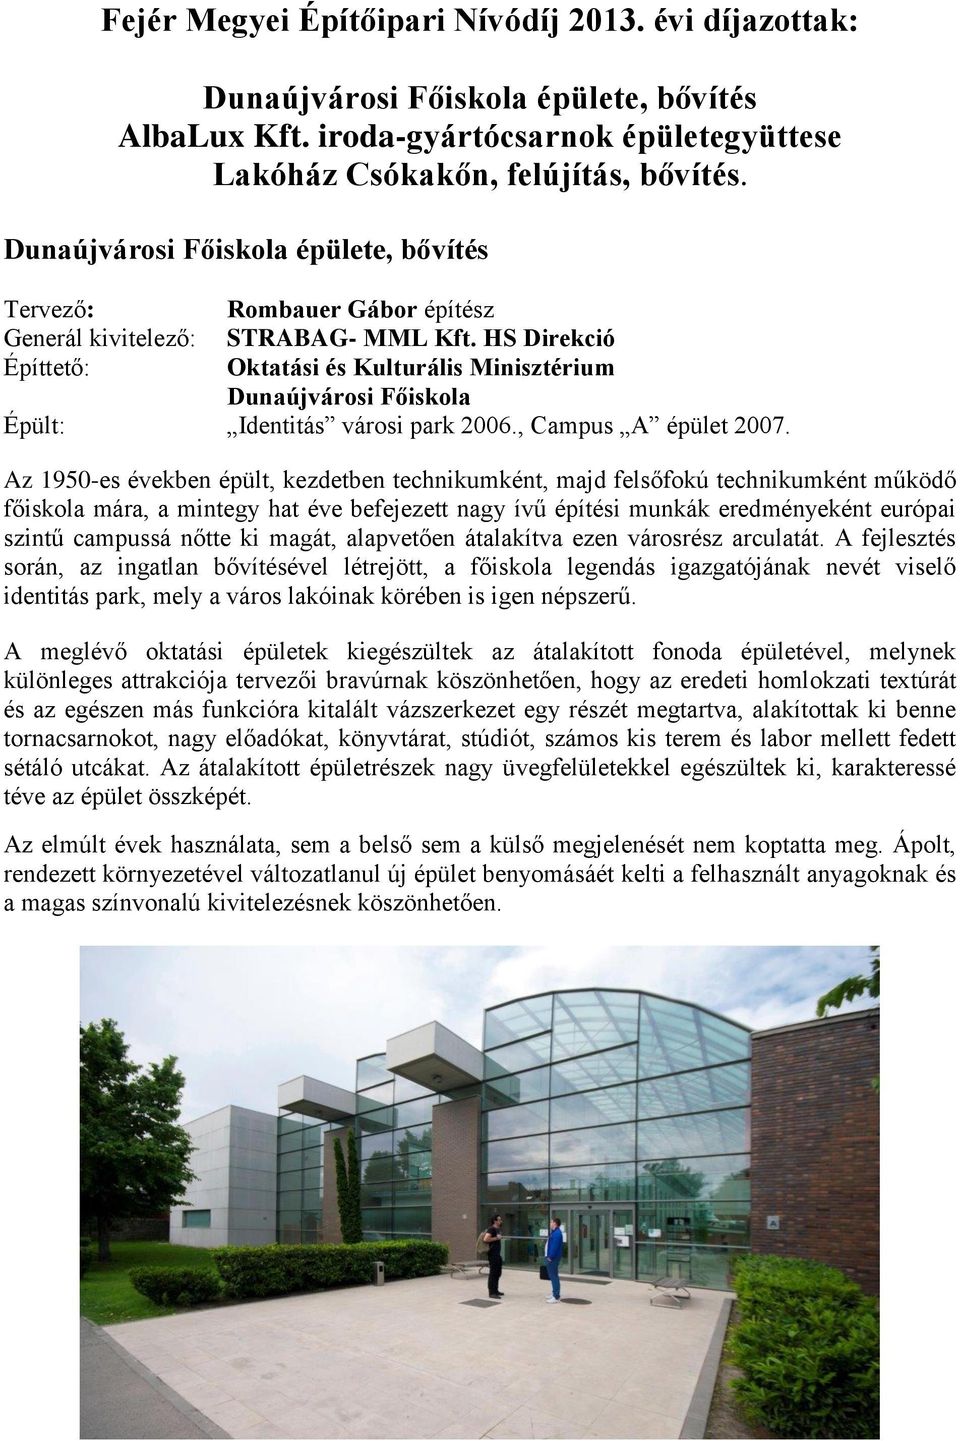 HS Direkció Építtető: Oktatási és Kulturális Minisztérium Dunaújvárosi Főiskola Épült: Identitás városi park 2006., Campus A épület 2007.